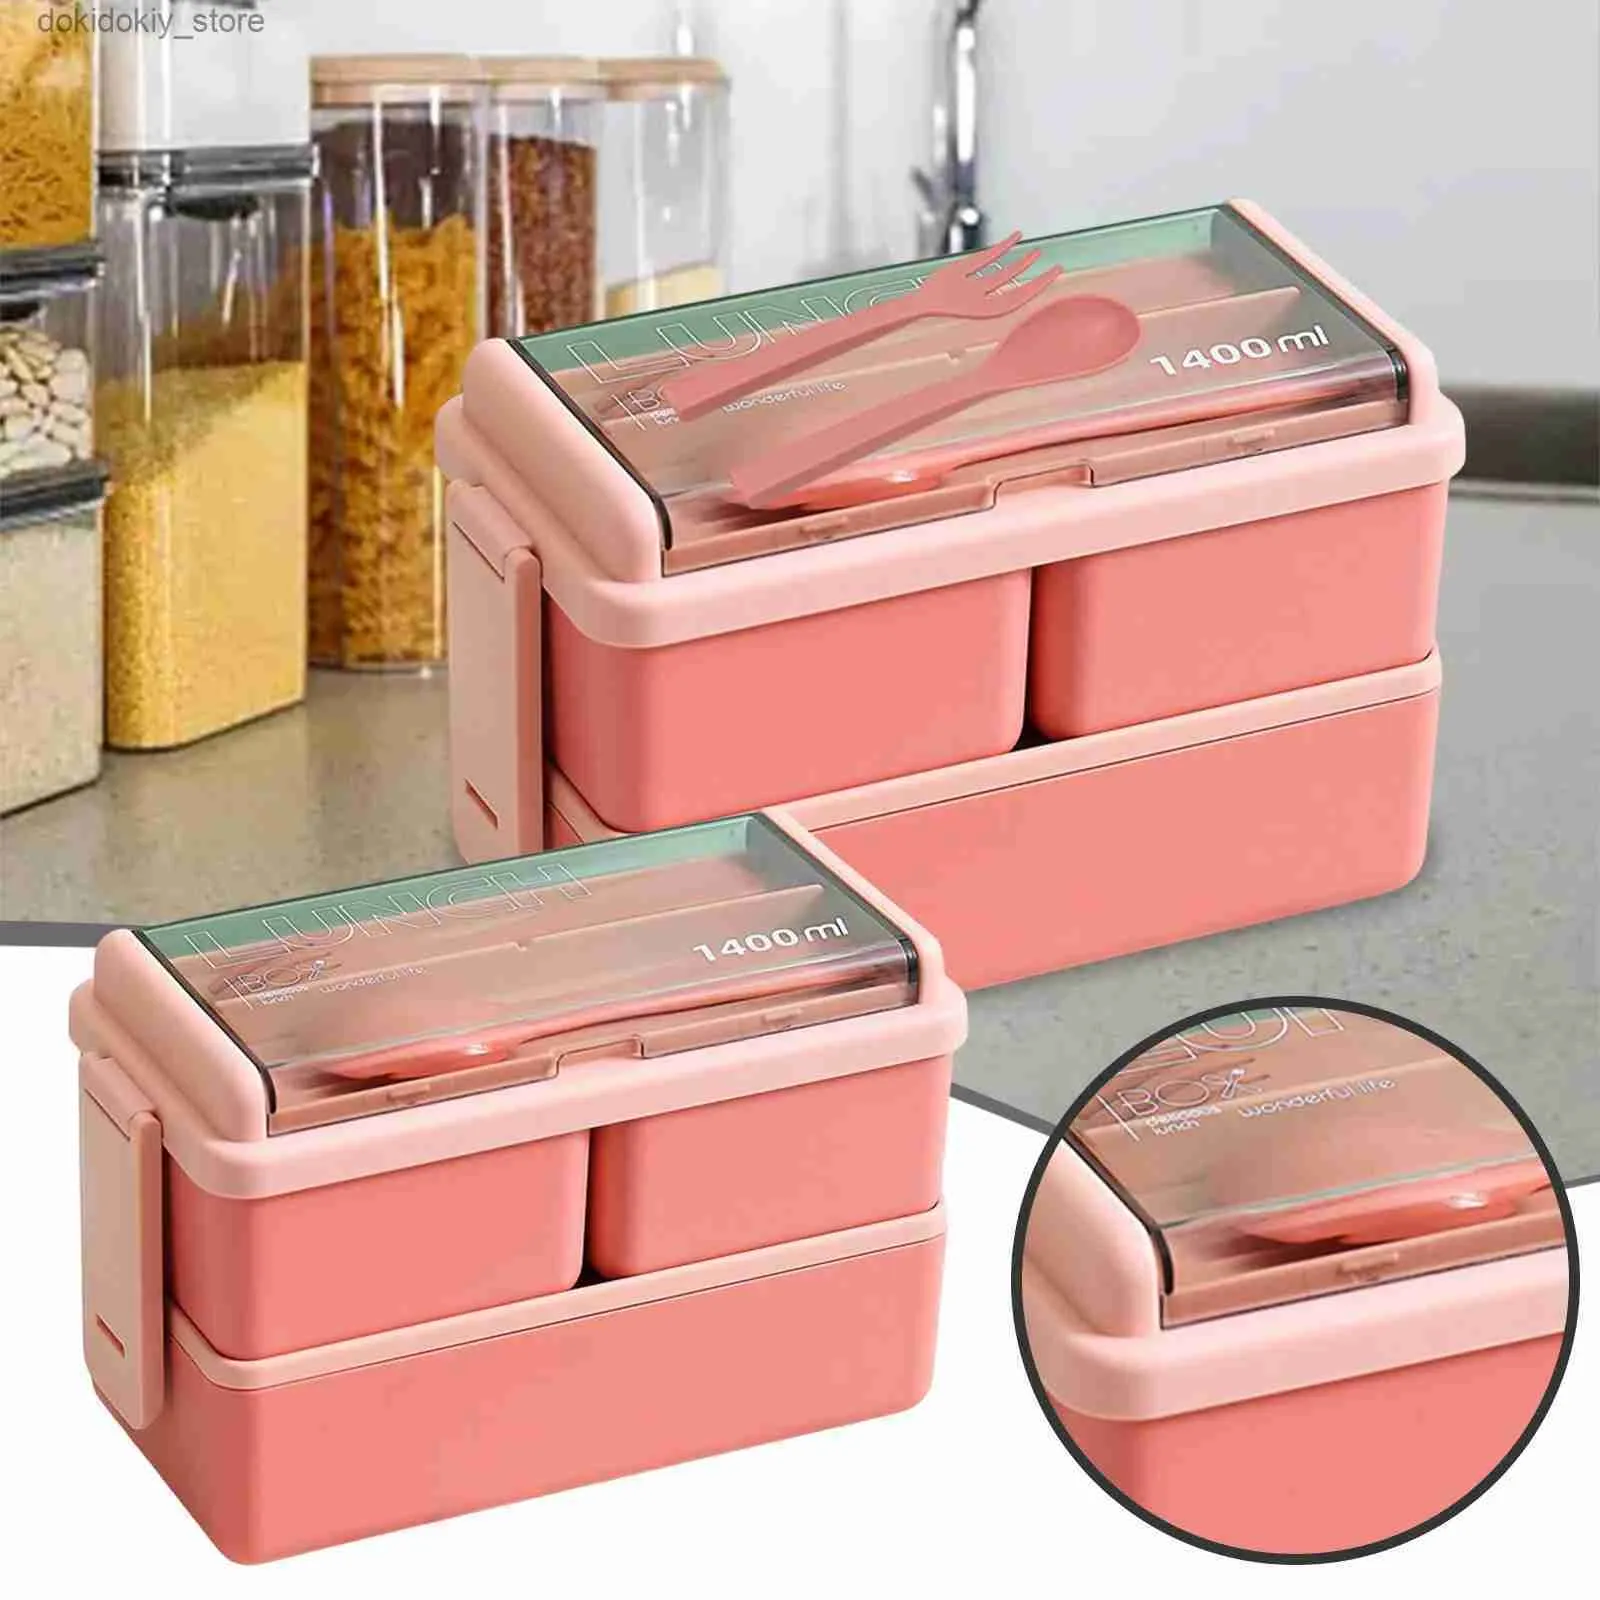 Bento Boxes Lunch Box per bambini per adulti Container per le perdite per le perdite box con 3 compartimenti a scuola lavoro a microonde bento box rosa portatile L49